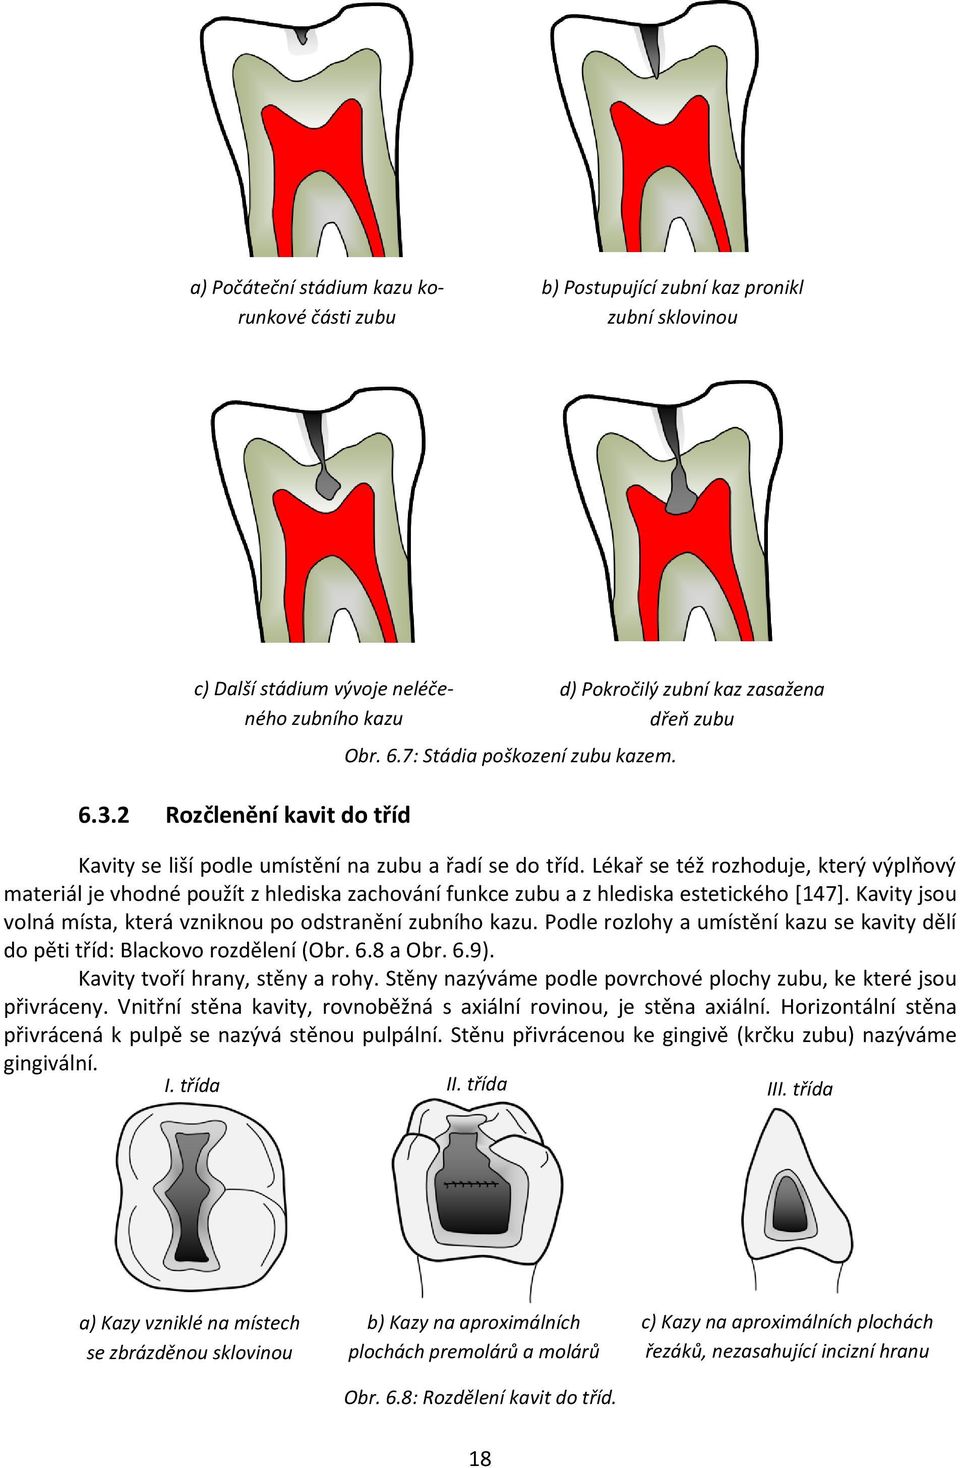 Lékař se též rozhoduje, který výplňový materiál je vhodné použít z hlediska zachování funkce zubu a z hlediska estetického [147]. Kavity jsou volná místa, která vzniknou po odstranění zubního kazu.